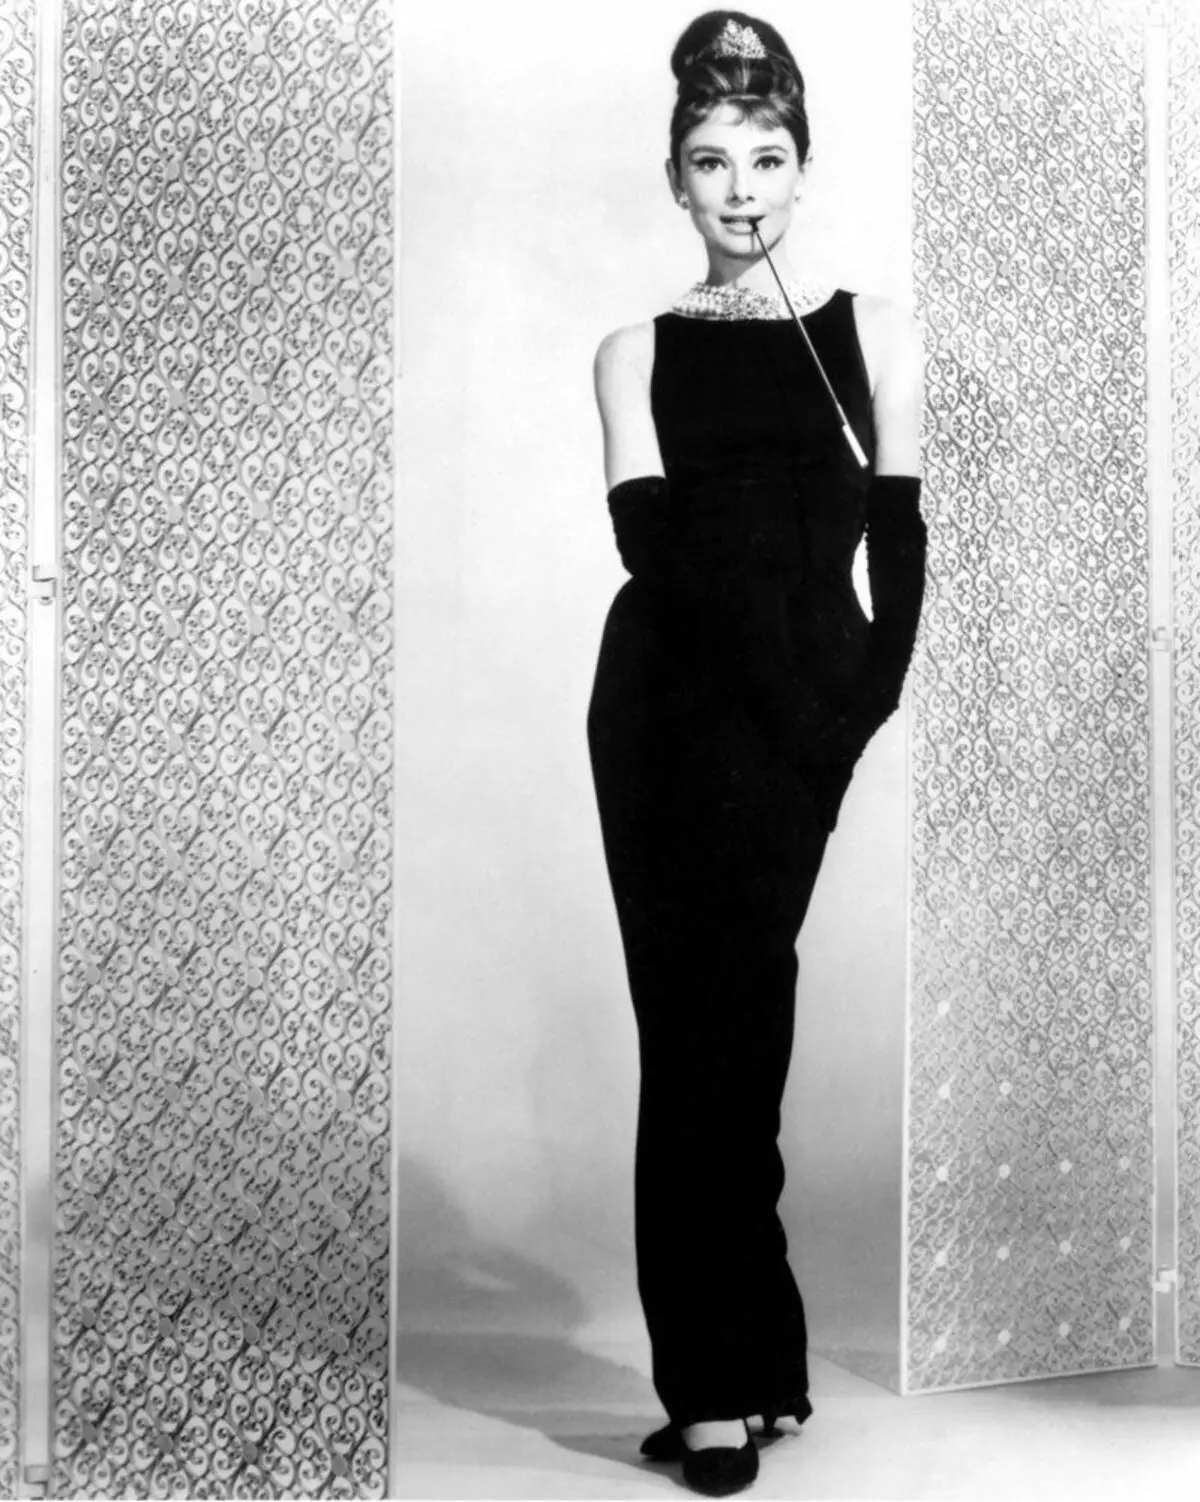 Shift-jurk Audrey Hepburn uit film